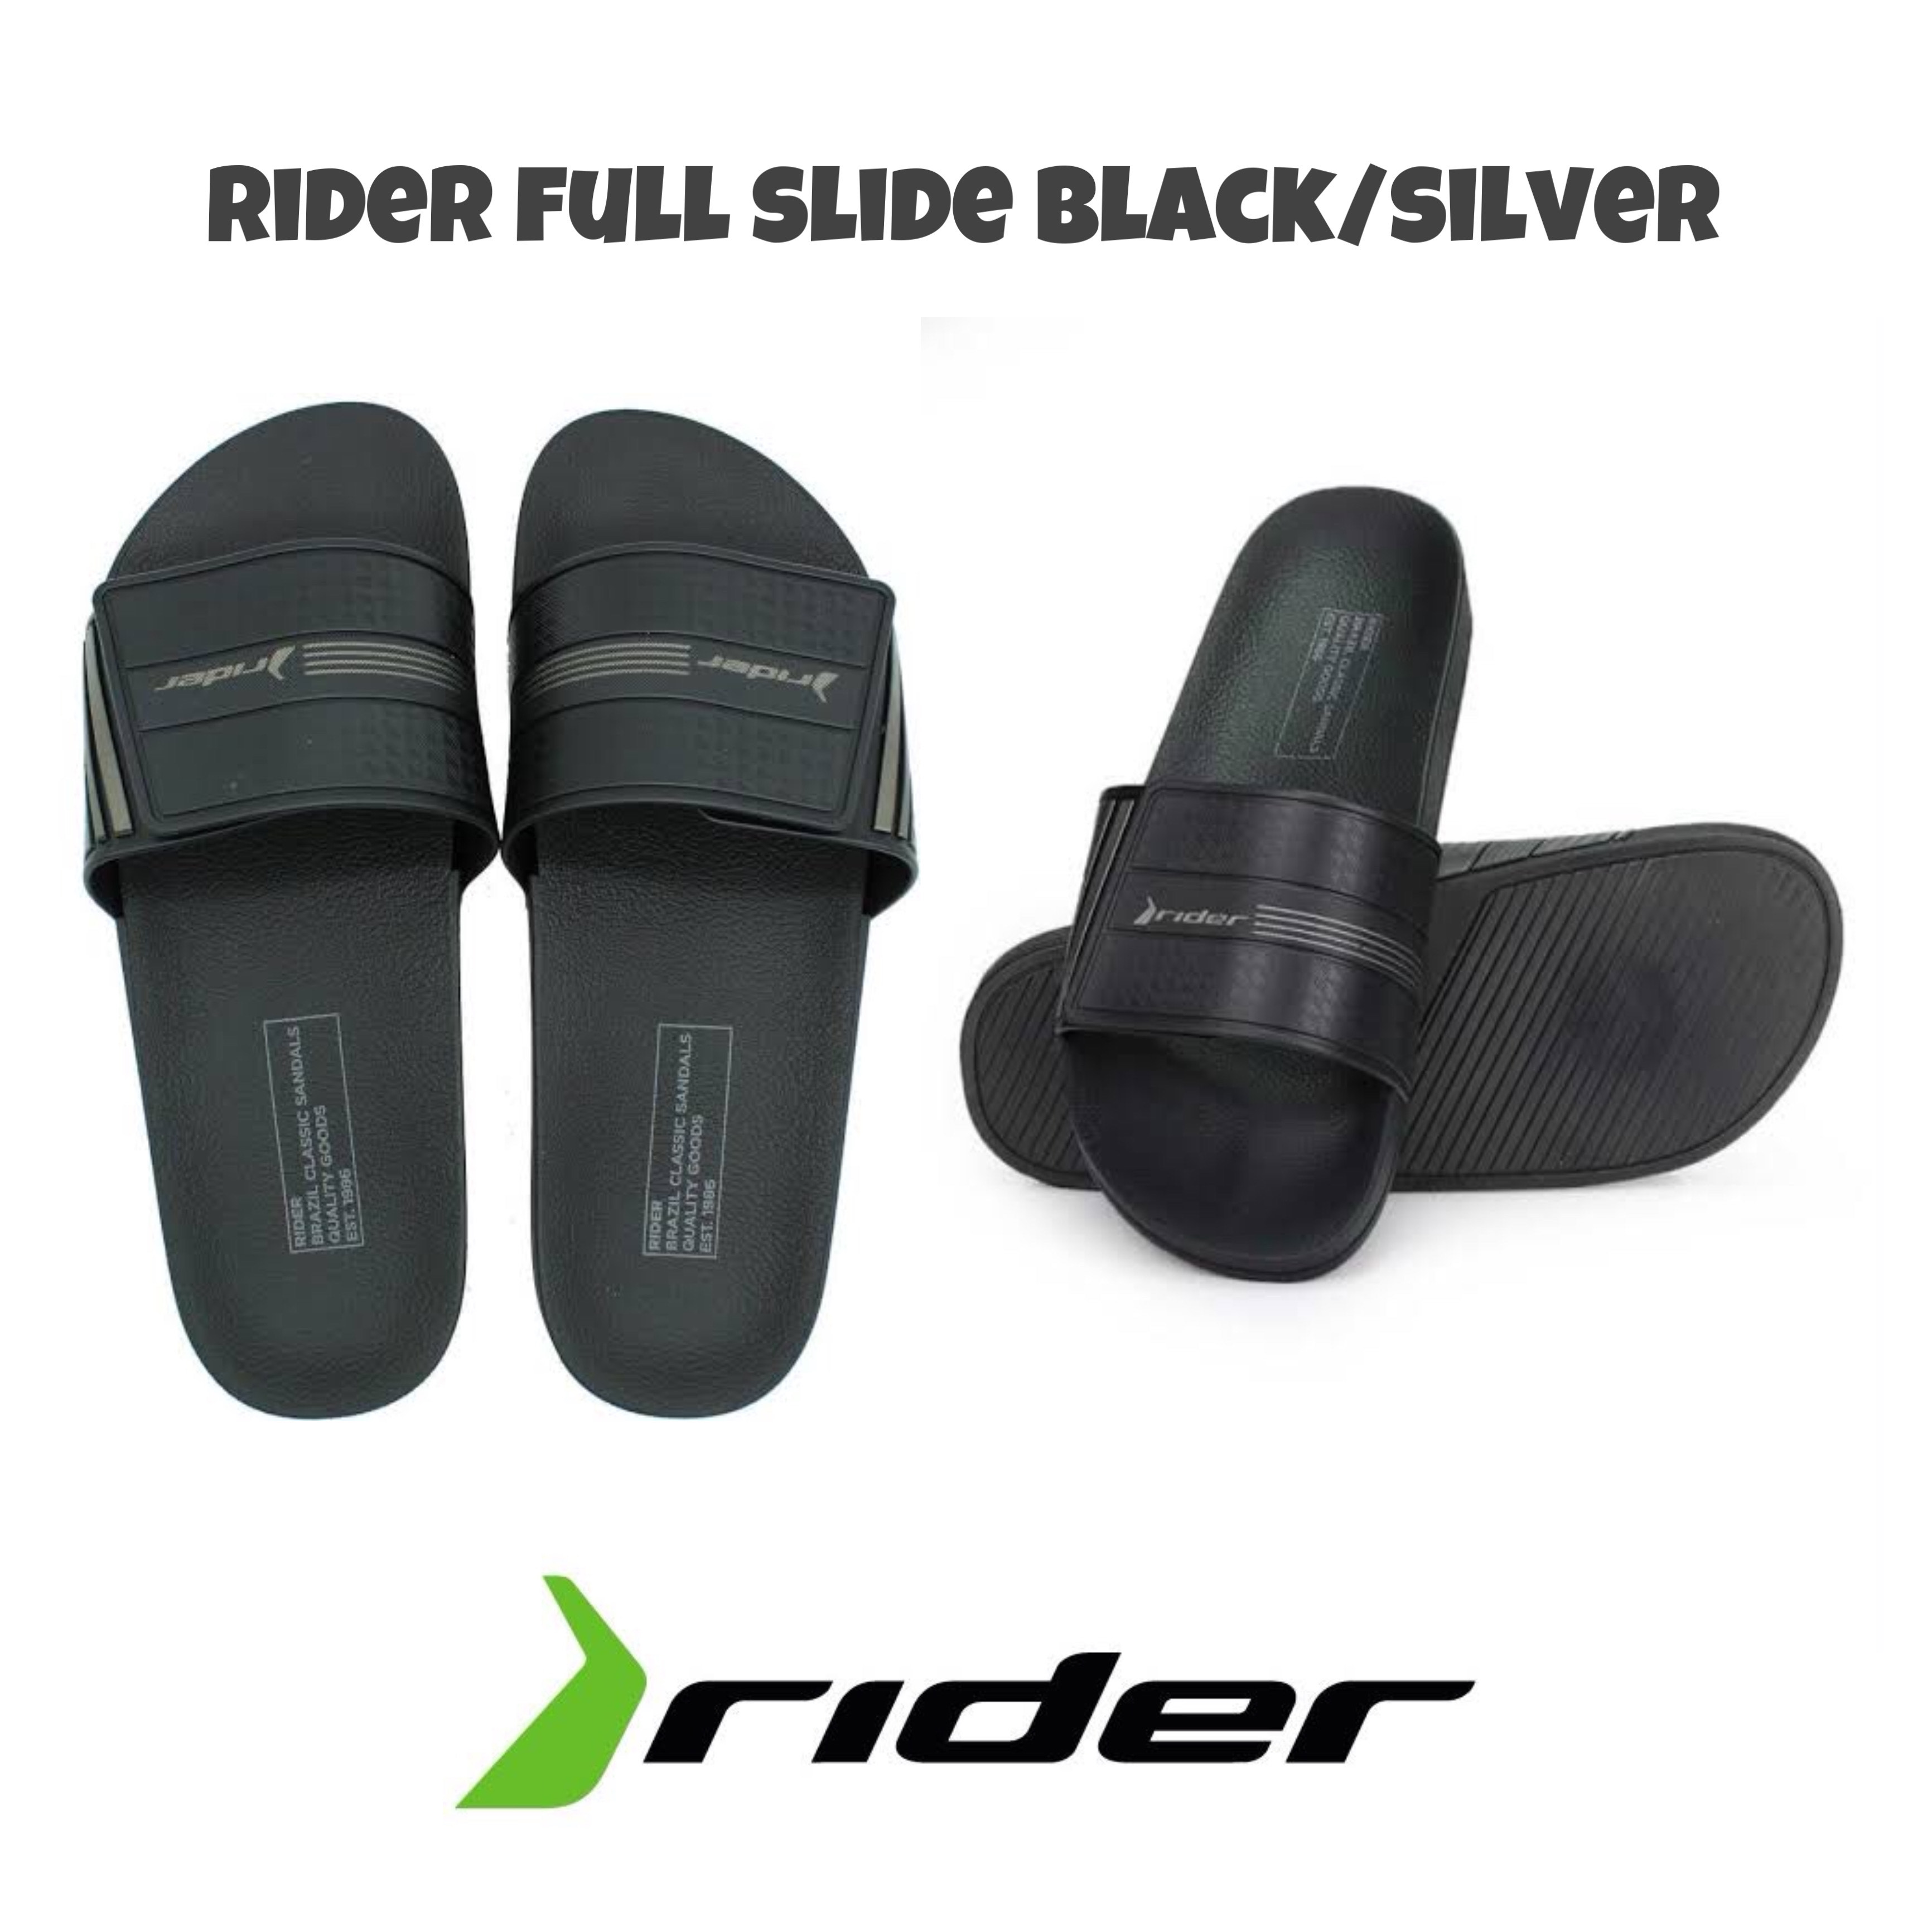 rider slippers price